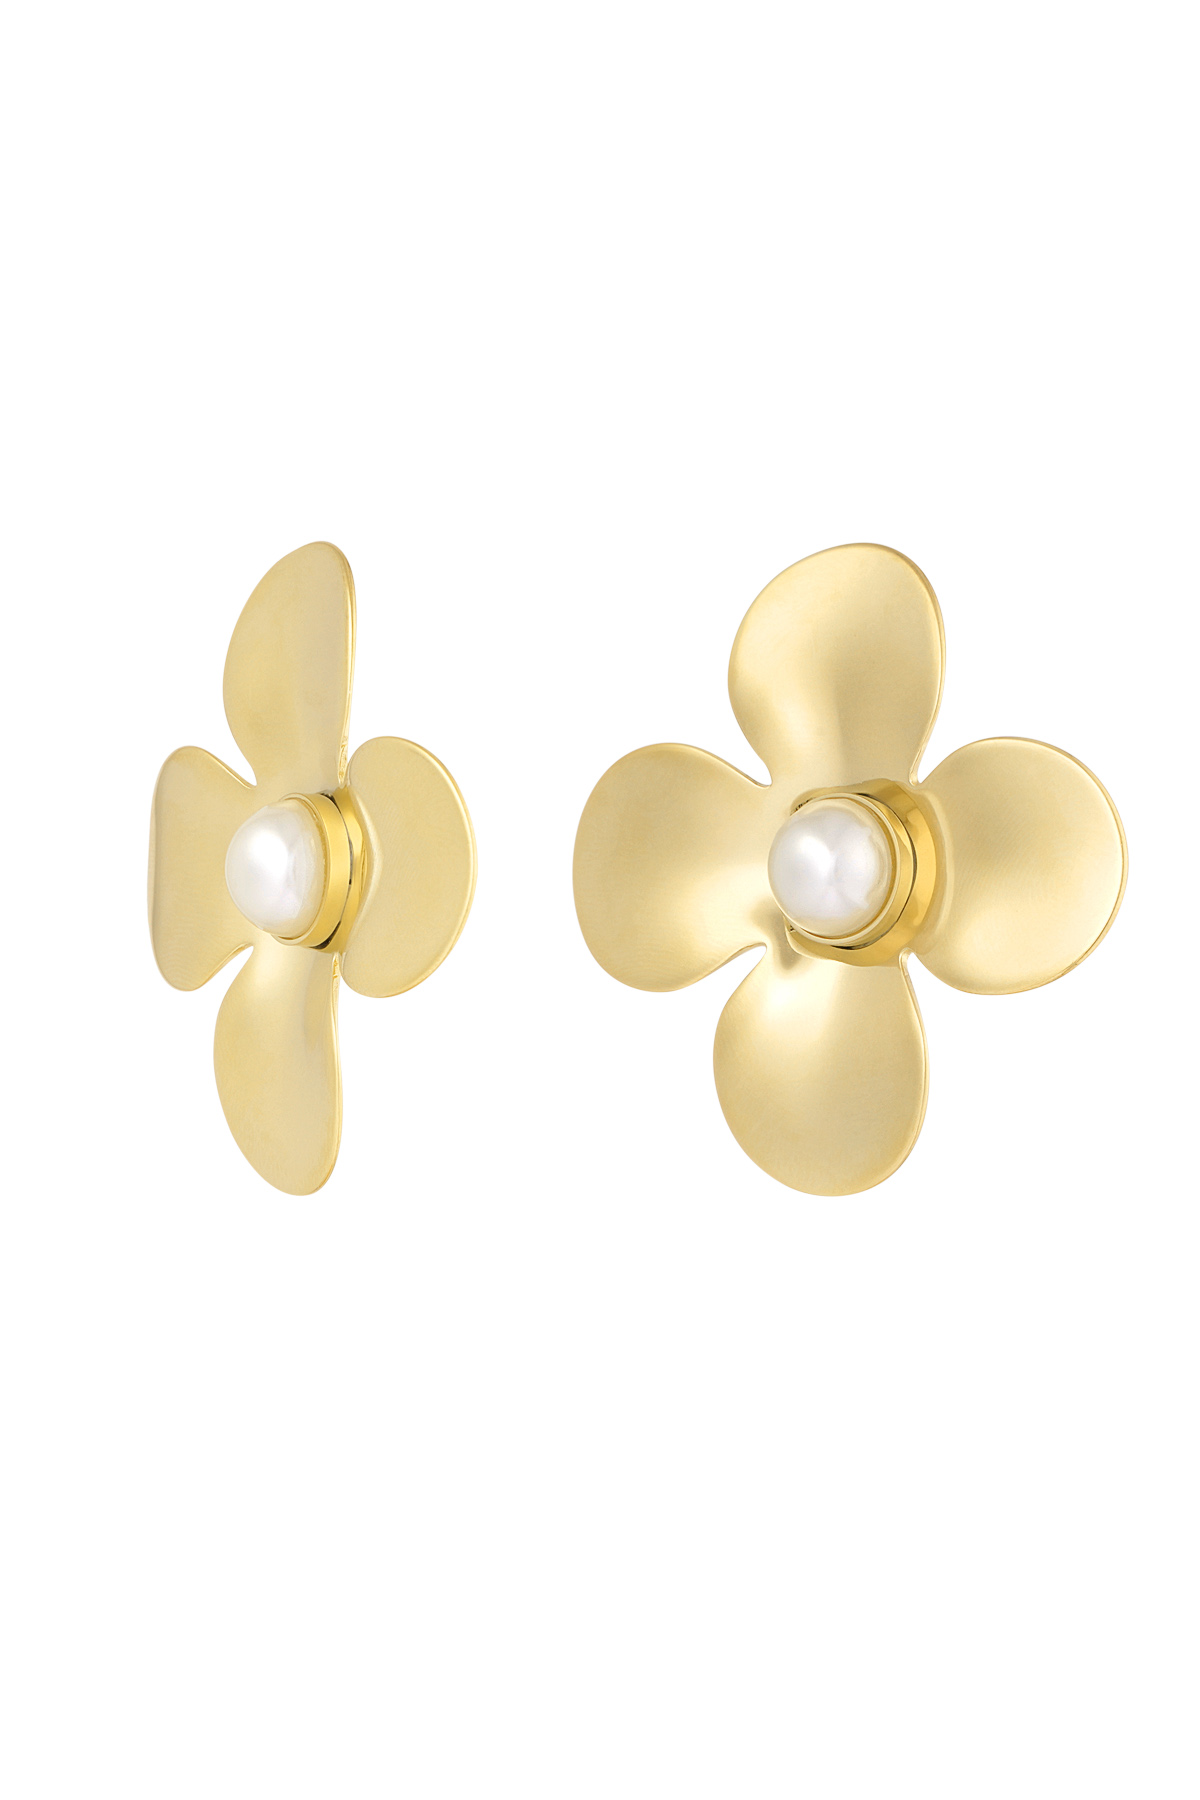 Statement oorbellen floral pearl - goud